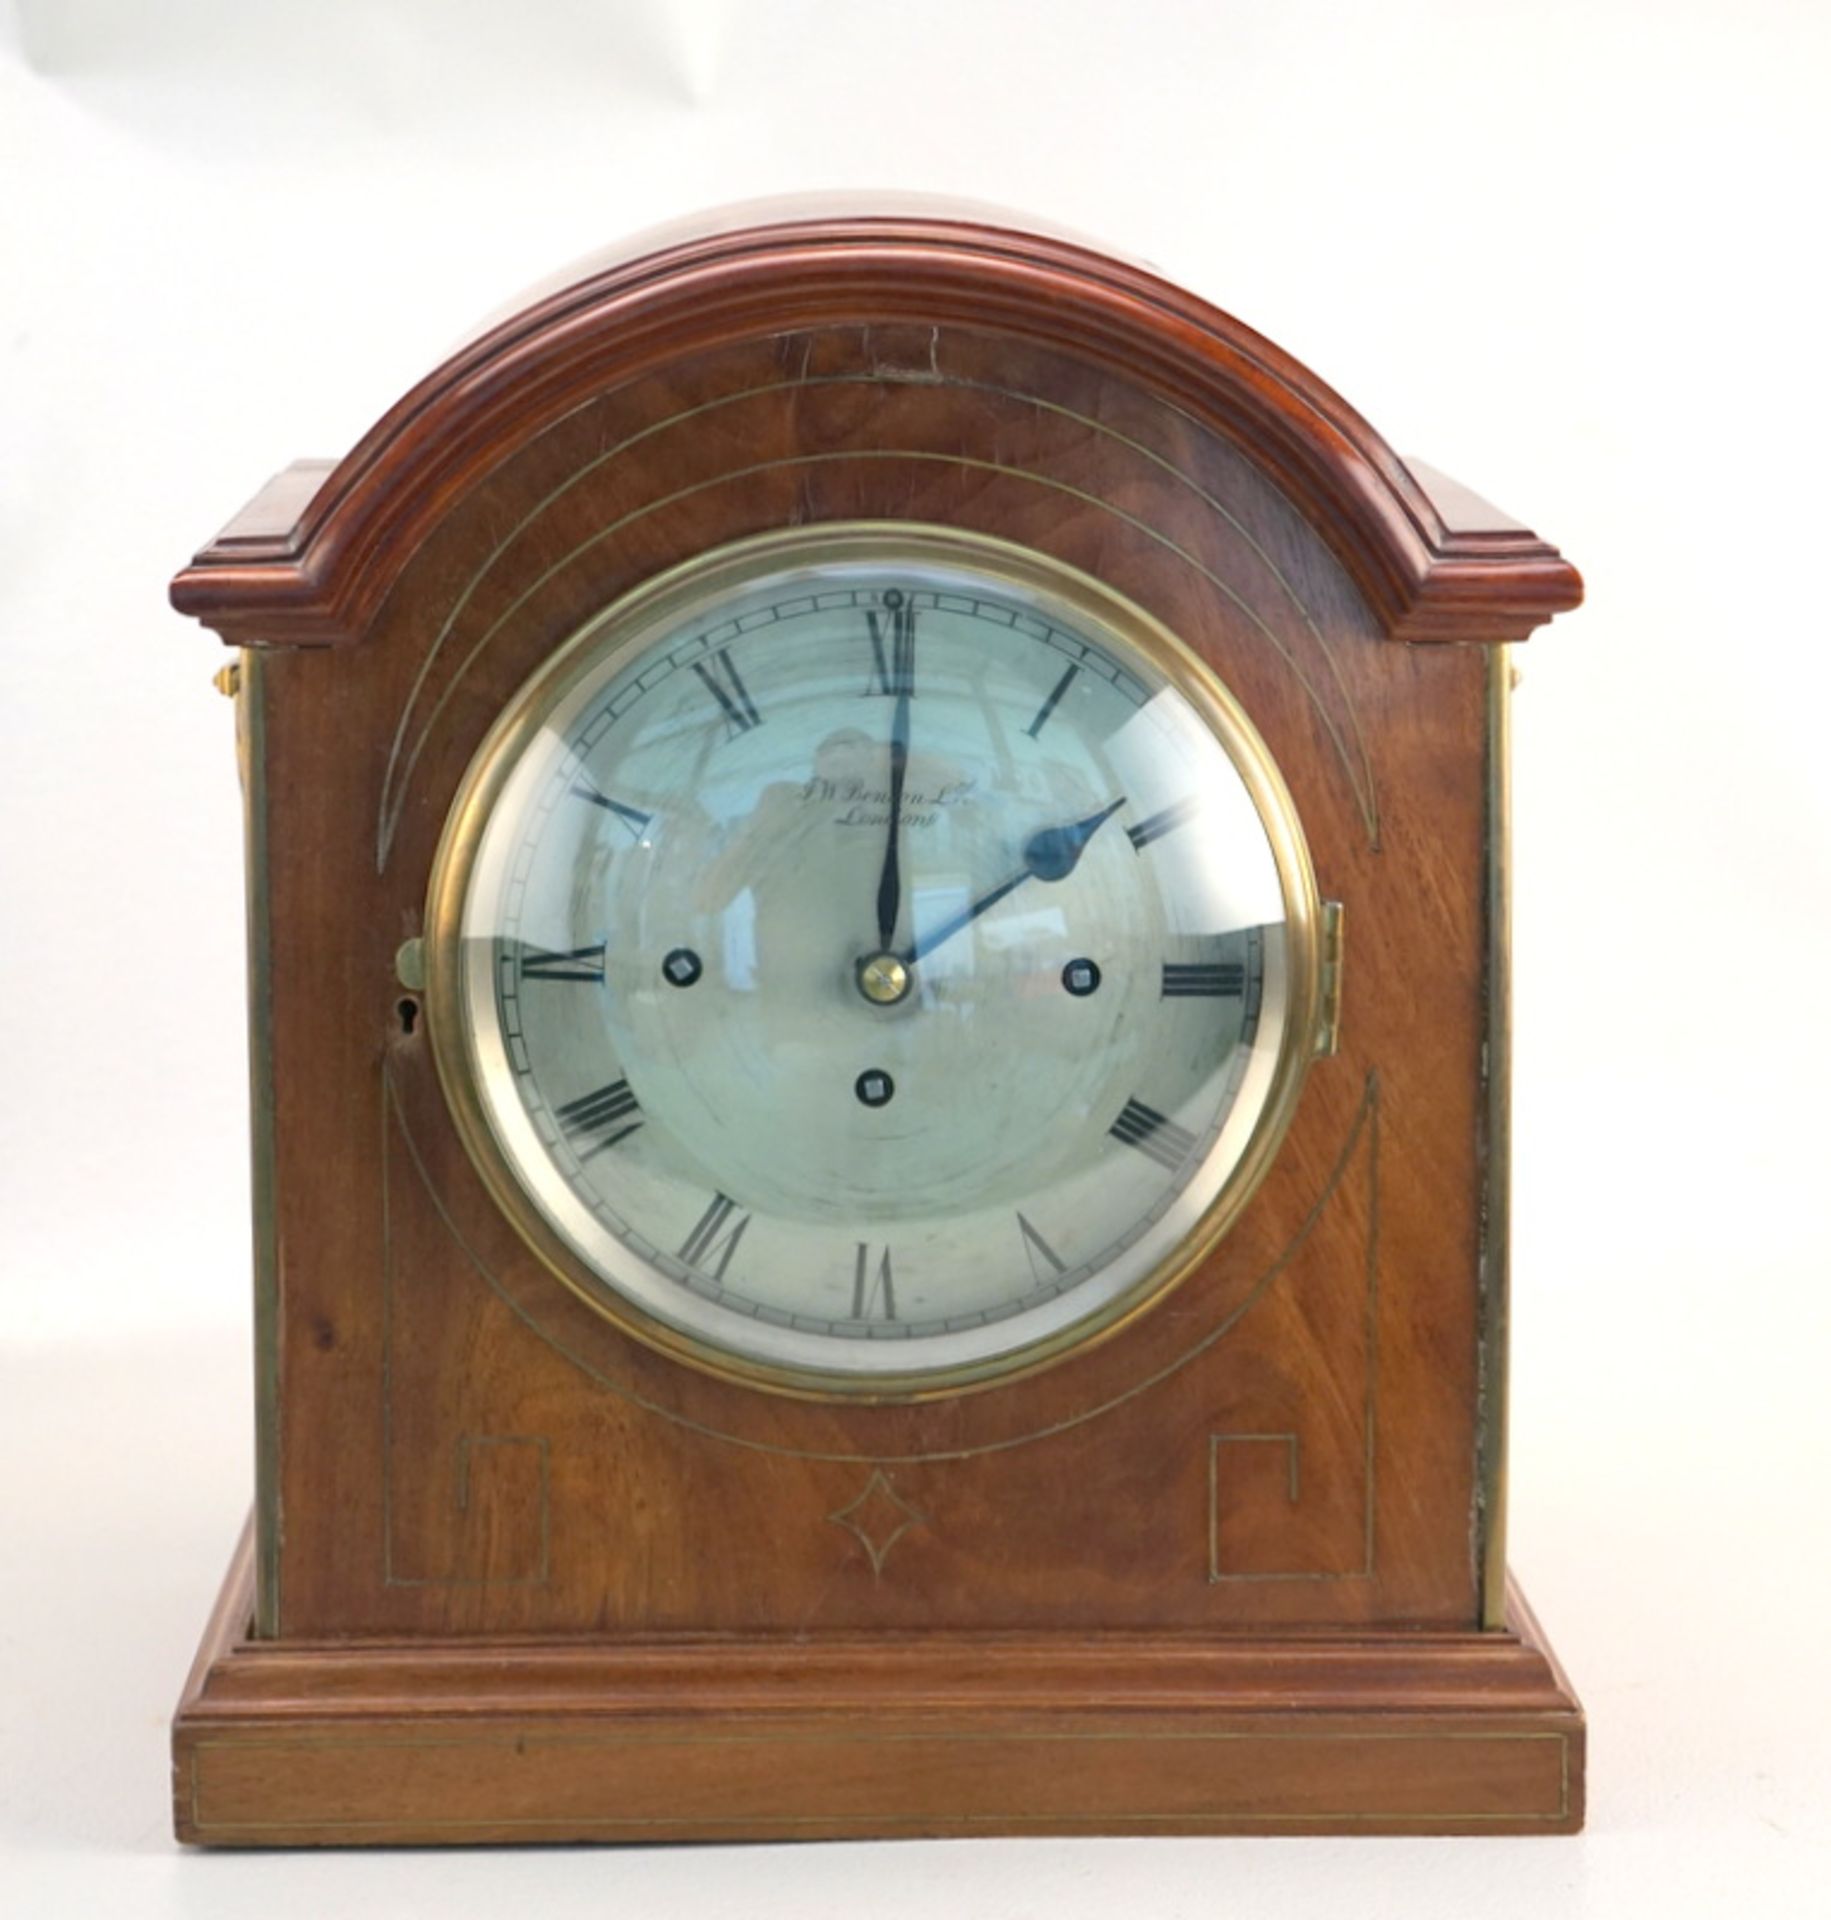 J.W. Benson Ldt., London: Bracket Clock mit Westminster Schlag auf Tonfeder, England, 1. H. 19. JH. - Bild 2 aus 3